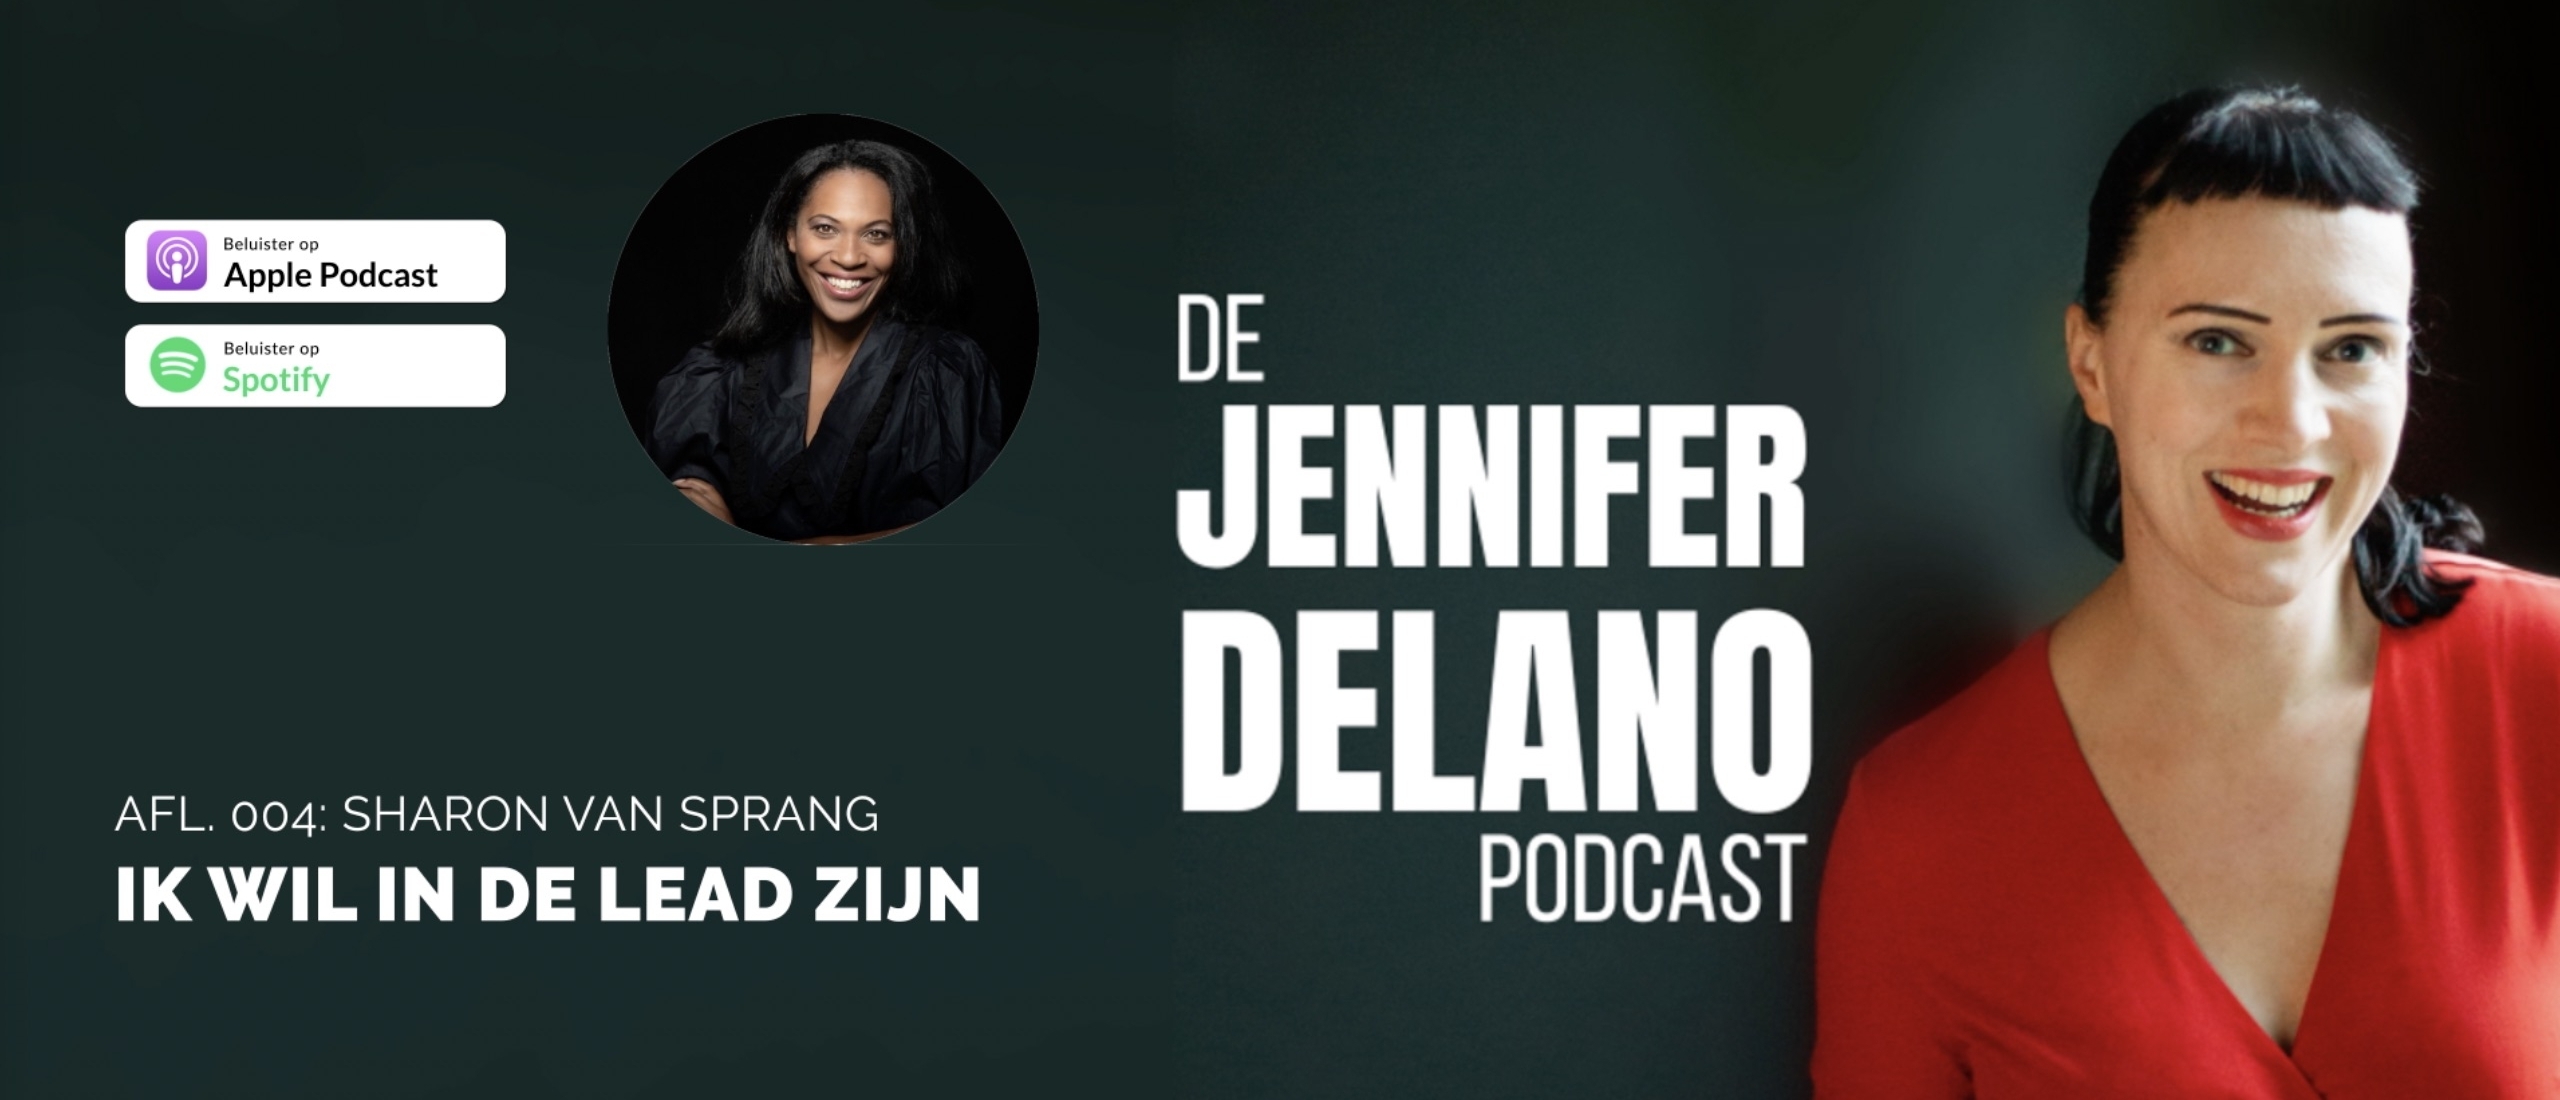 In de lead zijn - De Jennifer Delano Podcast Afl. 004 met Sharon van Sprang